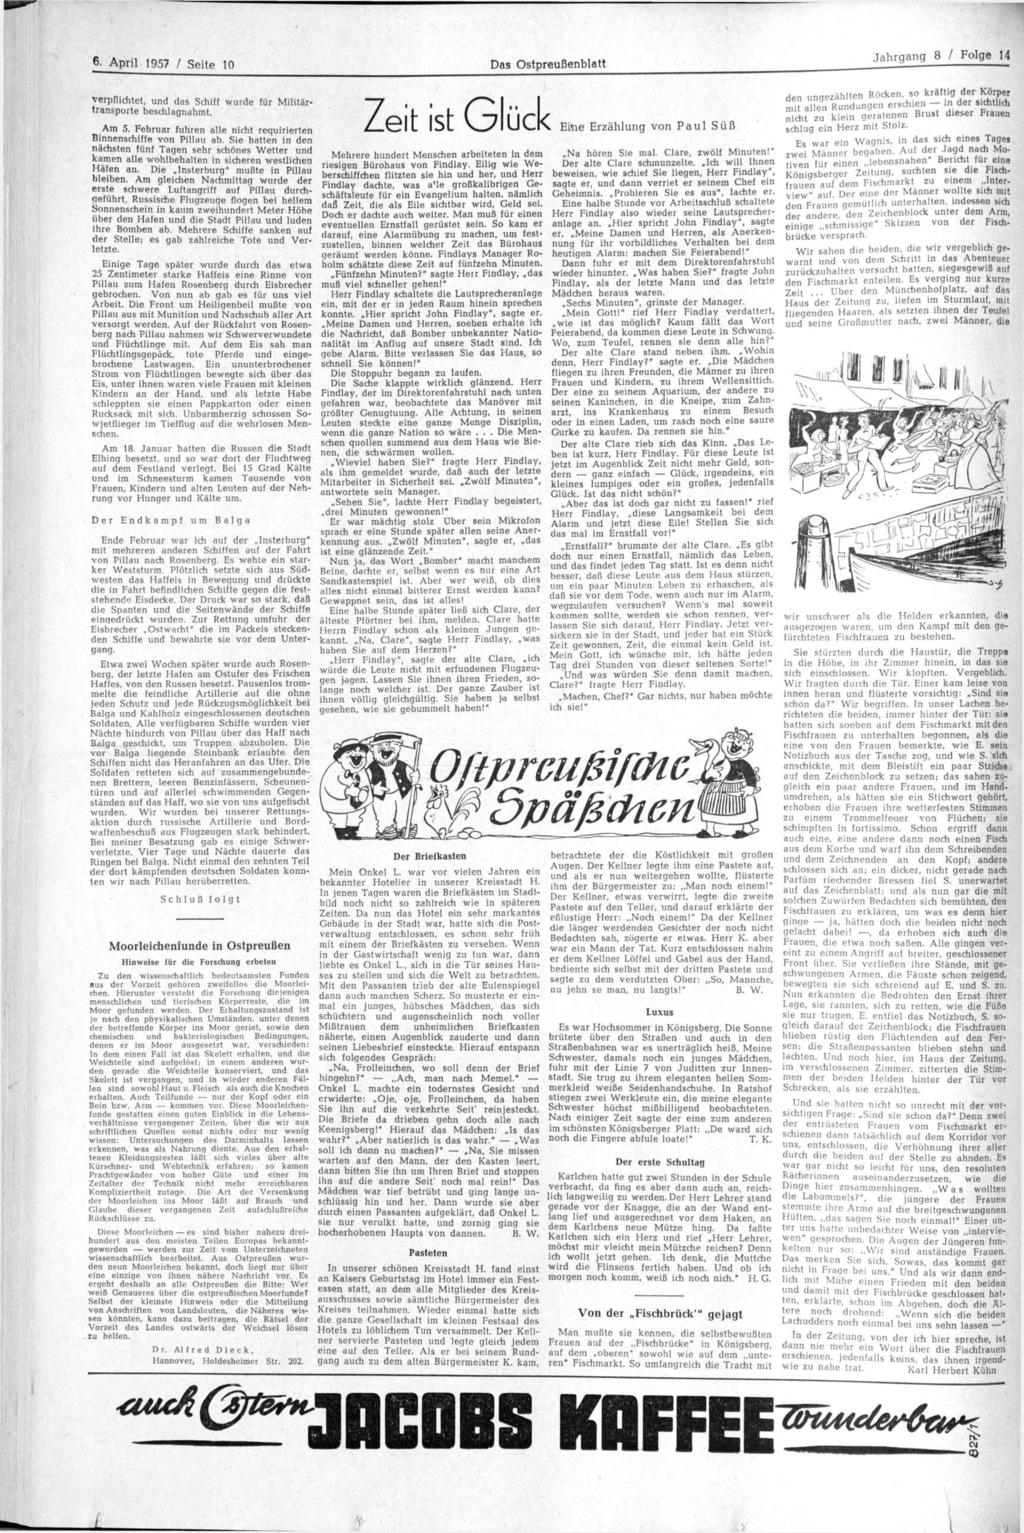 6. April 1957 / Seite 10 Das Ostpreußenblatt Jahrgang 8 / Folge 14 verpflichtet, und das Schiff wurde für Militärtransporte beschlagnahmt. Am 5.